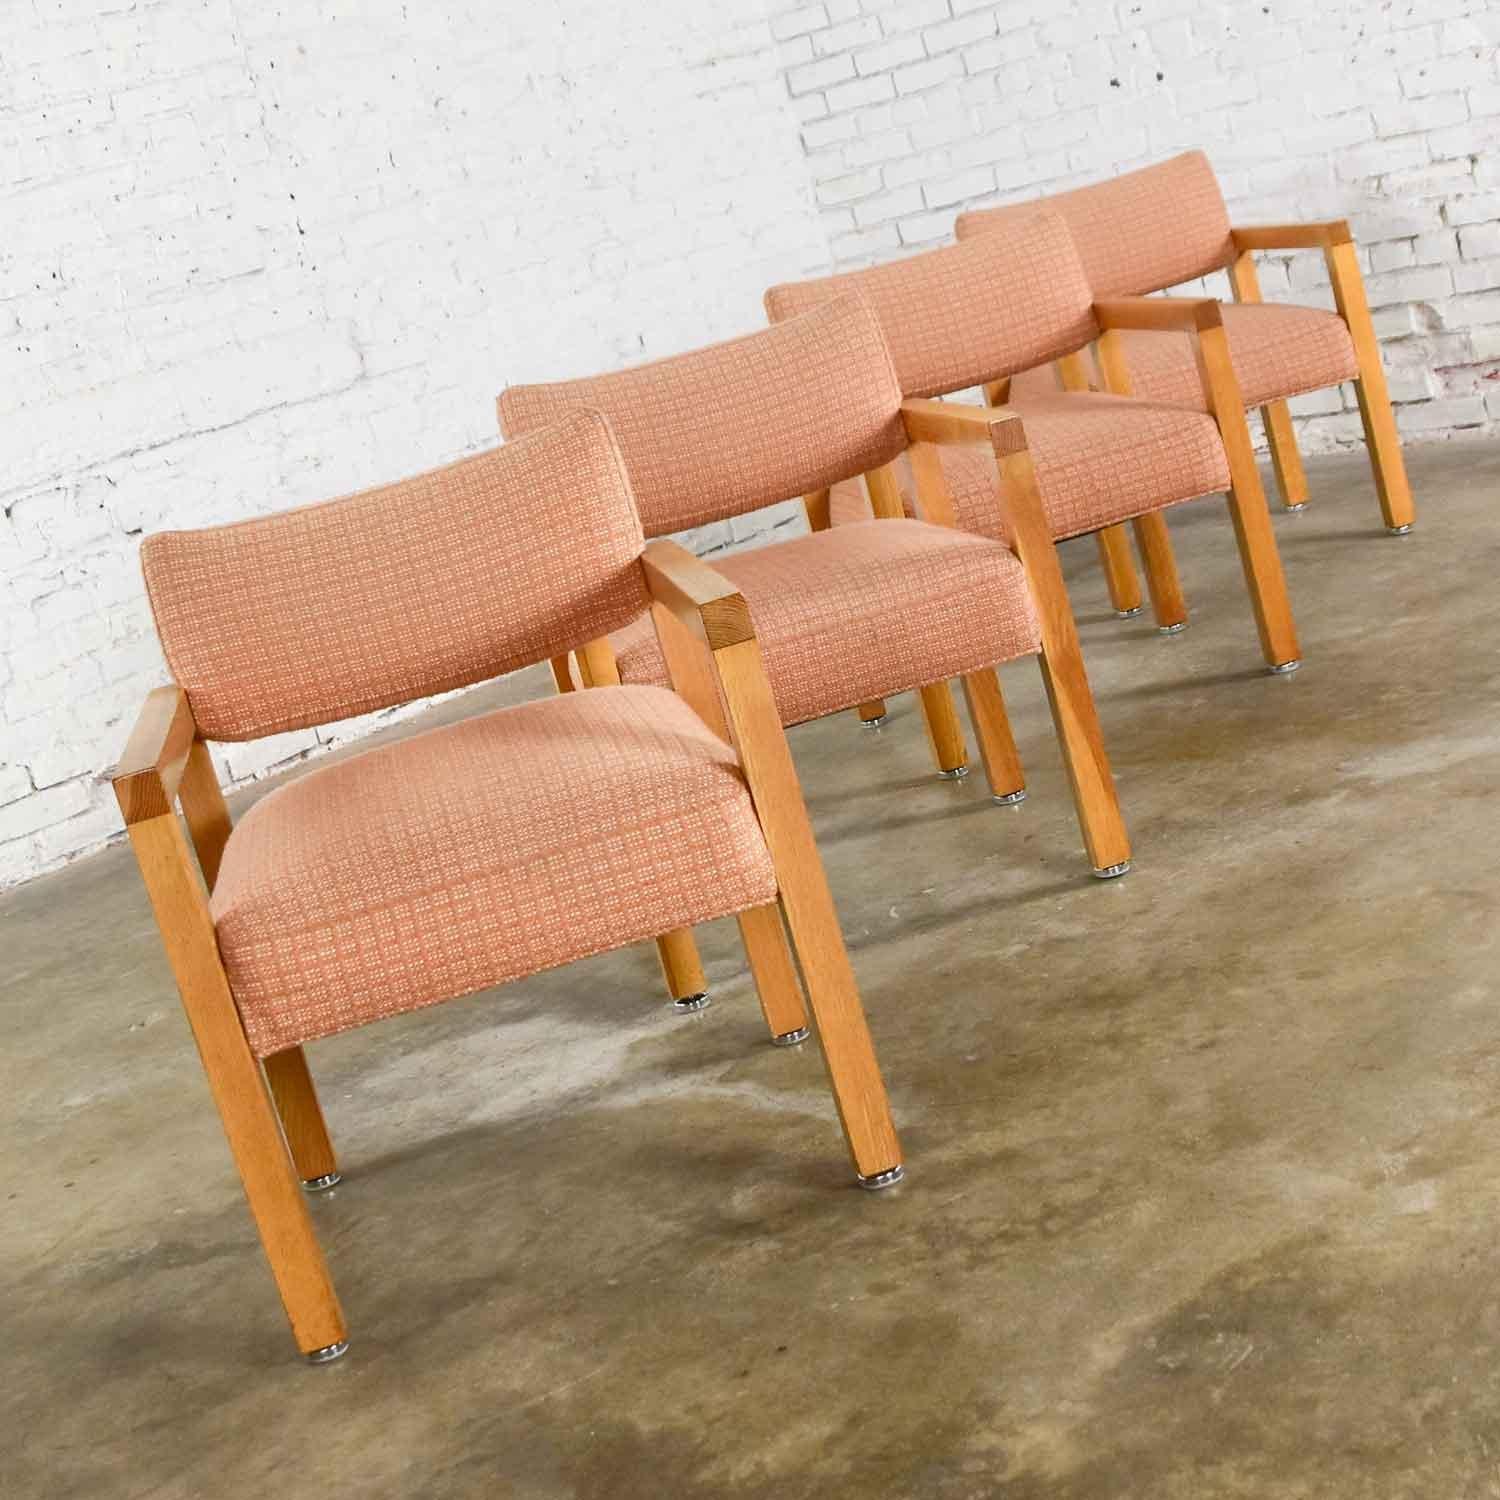 Wunderschönes Set aus vier modernen Sesseln mit quadratischem Gestell, fast im Parsons-Stil, bestehend aus Eichenholz, ihrem originalen blush-strukturierten Stoff und verstellbaren, scheibenförmigen Füßen aus Chrom und Nylon. Typische altersgemäße